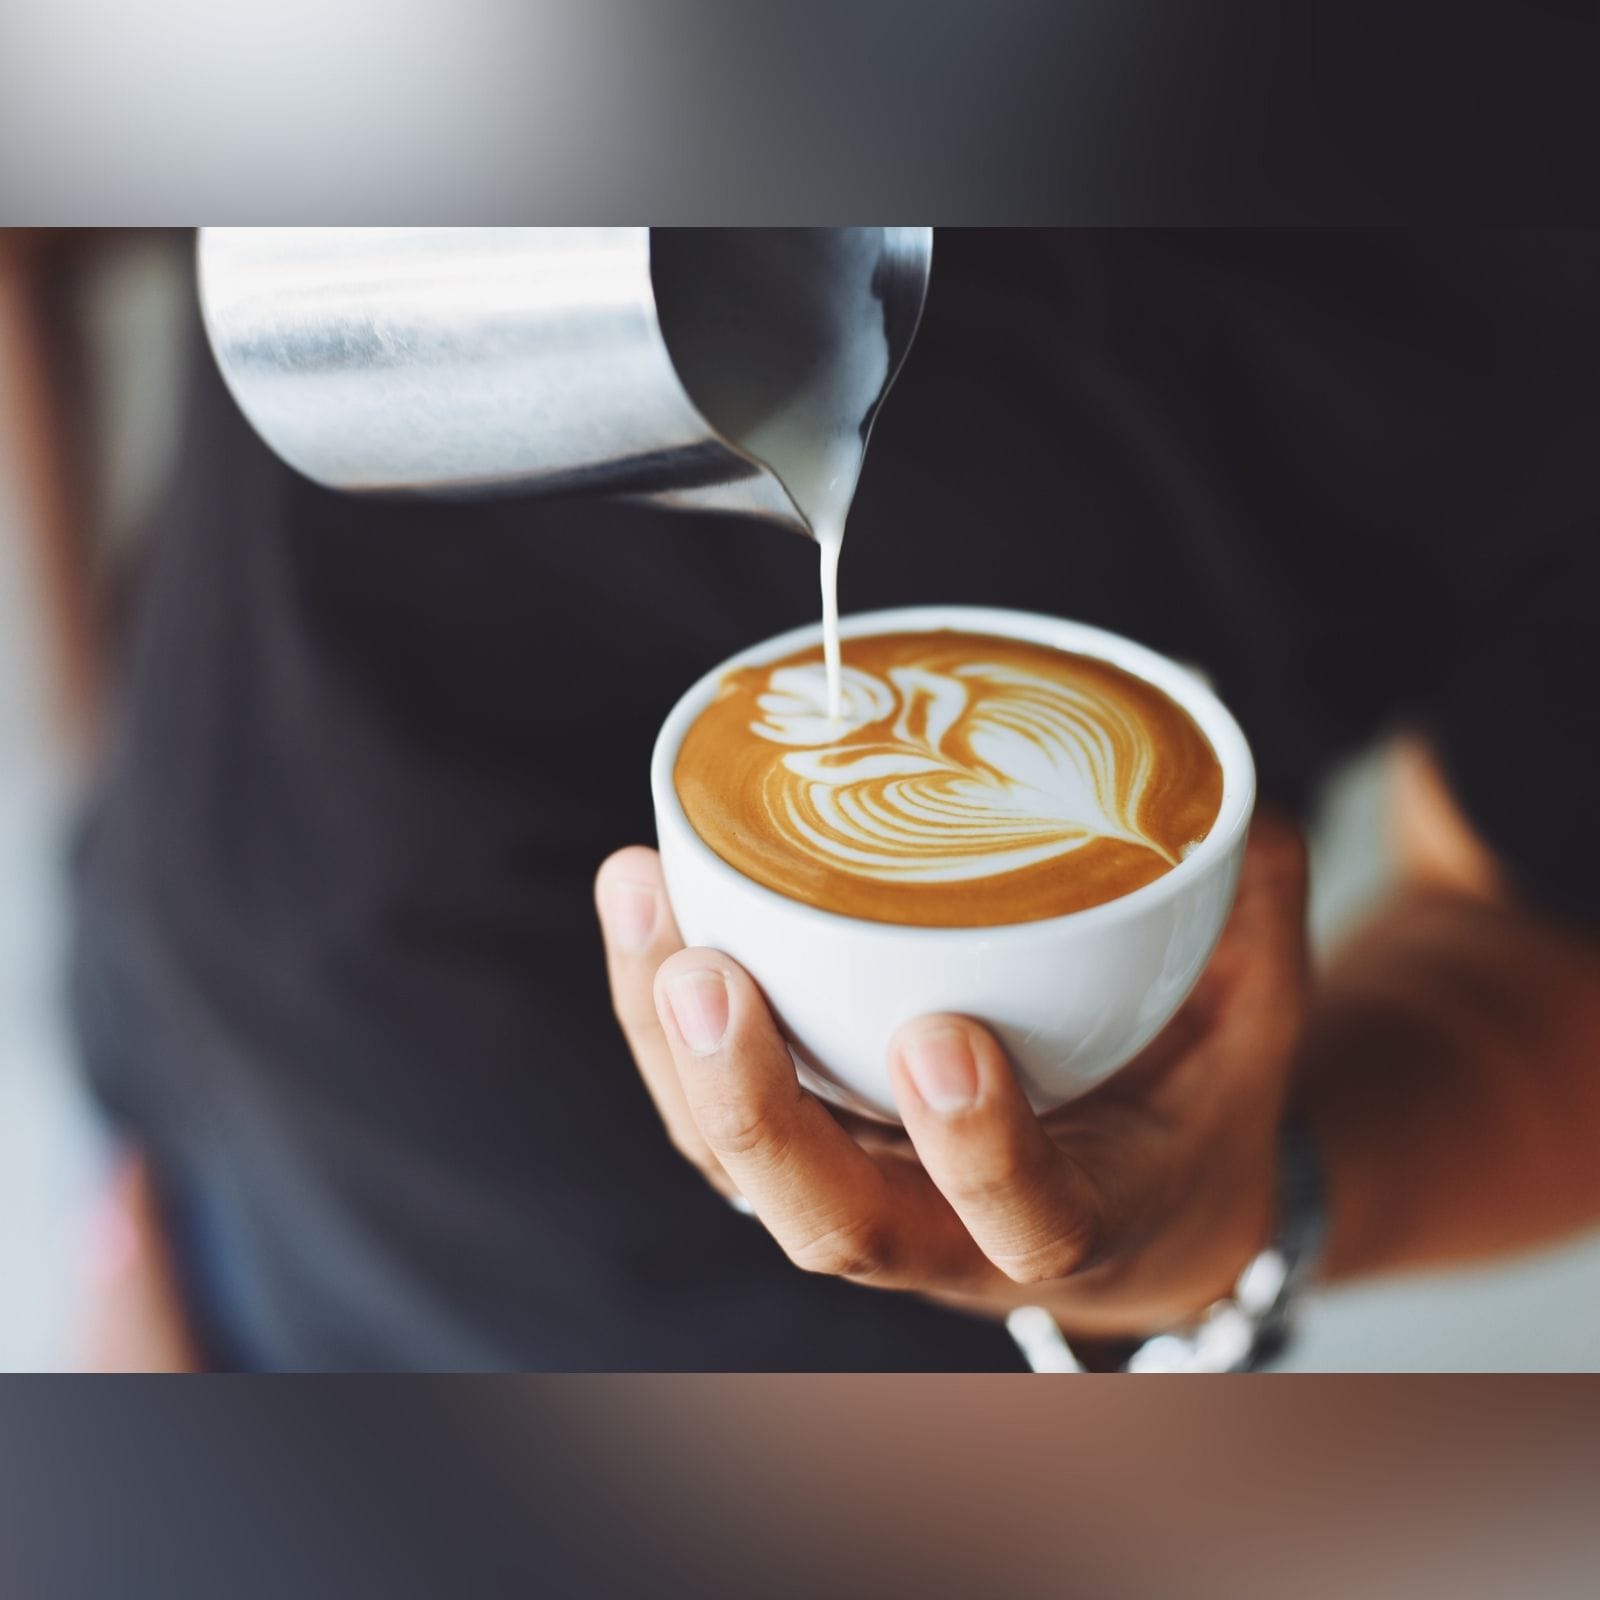  कॉफी के साथ दिन की शुरुआत अच्छी मानी जाती है. इसमें उच्च मात्रा में कैफीन पाया जाता है जो मूड को तरोताजा करता है और मानसिक प्रदर्शन को बेहतर बनाता है. सुबह में कॉफी पीने से दिन भर ताजगी बनी रहती है. हालांकि कैफीन की थोड़ी मात्रा ही फायदेमंद है. अध्ययन में पाया गया है कि कैफीन की 38 से 400 मिलीग्राम की मात्रा ही फायदेमंद होती है. कैफीन में एंटीऑक्सीडेंट्स भी पाए जाते हैं, जो कोशिकाओं के अंदर सूजन को नहीं होने देते. (news18)